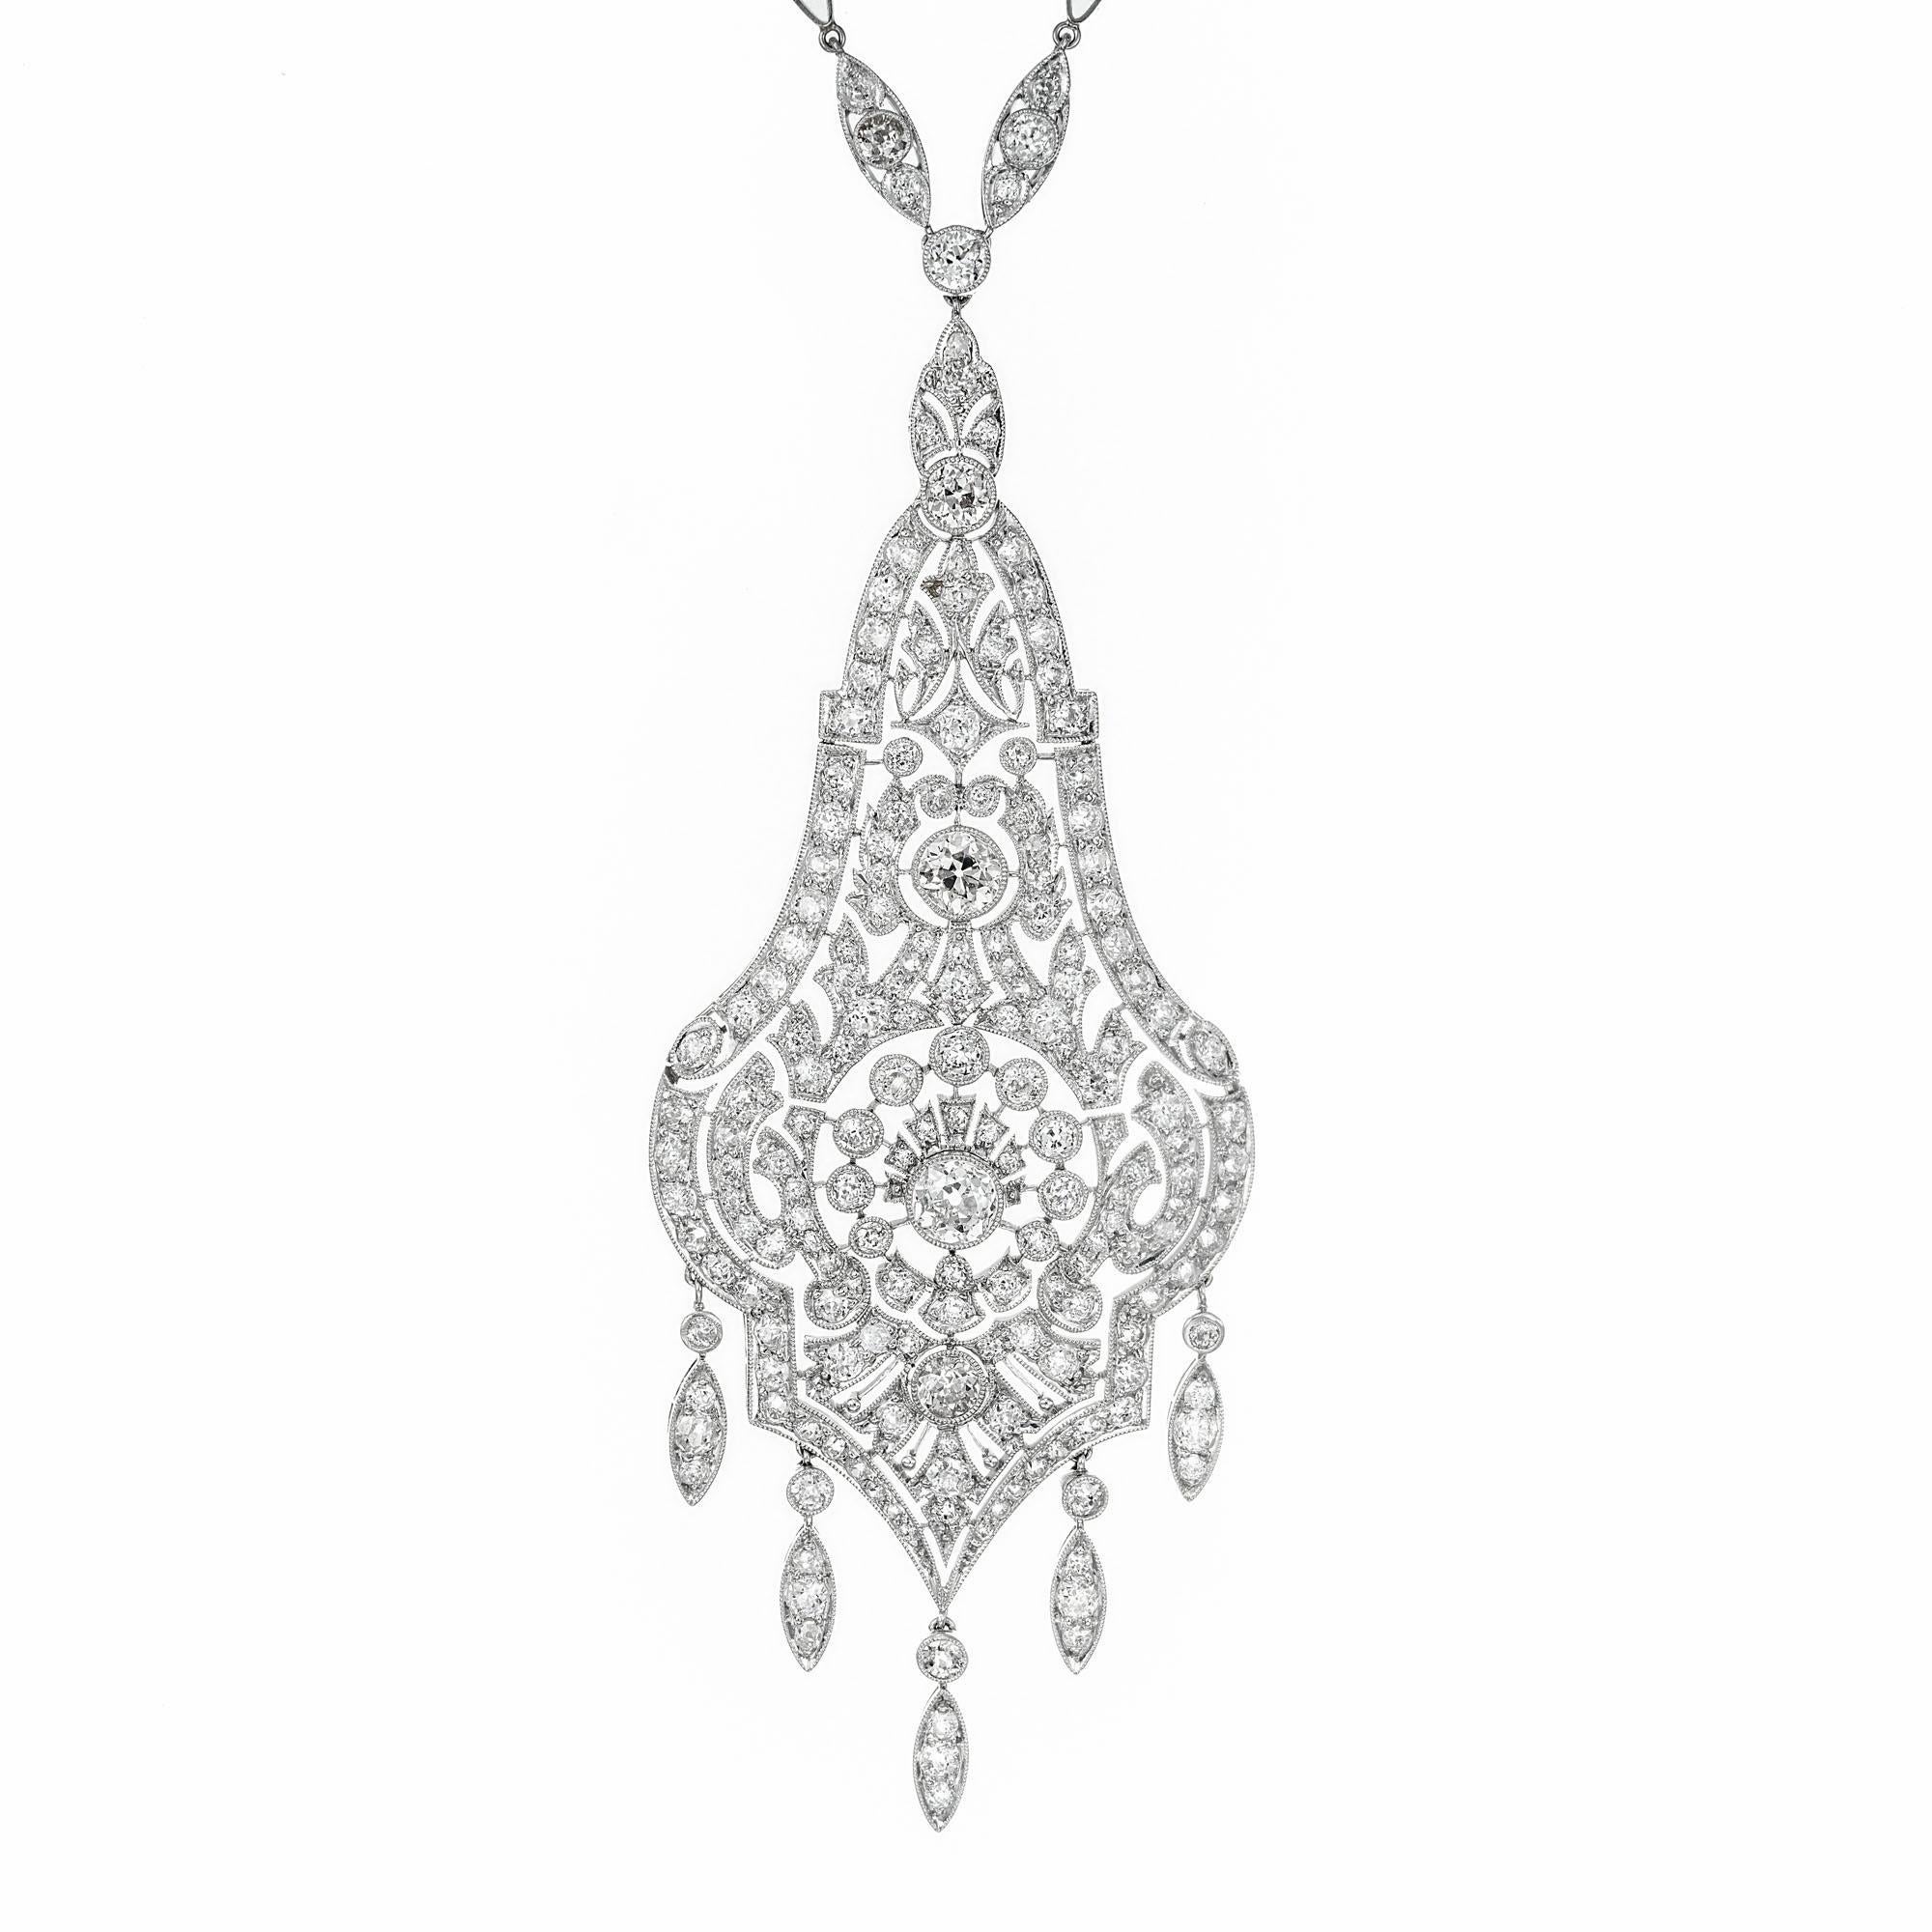 Belle-Époque-Diamant-Halskette aus der Zeit der Aufklärung. Um 1910. Dreiteiliger, mit Diamanten besetzter Anhänger mit Scharnier, mit 5 Bändern am unteren Ende, in Platin gefasst. Der Anhänger ist handgefertigt mit einer Diamant- und